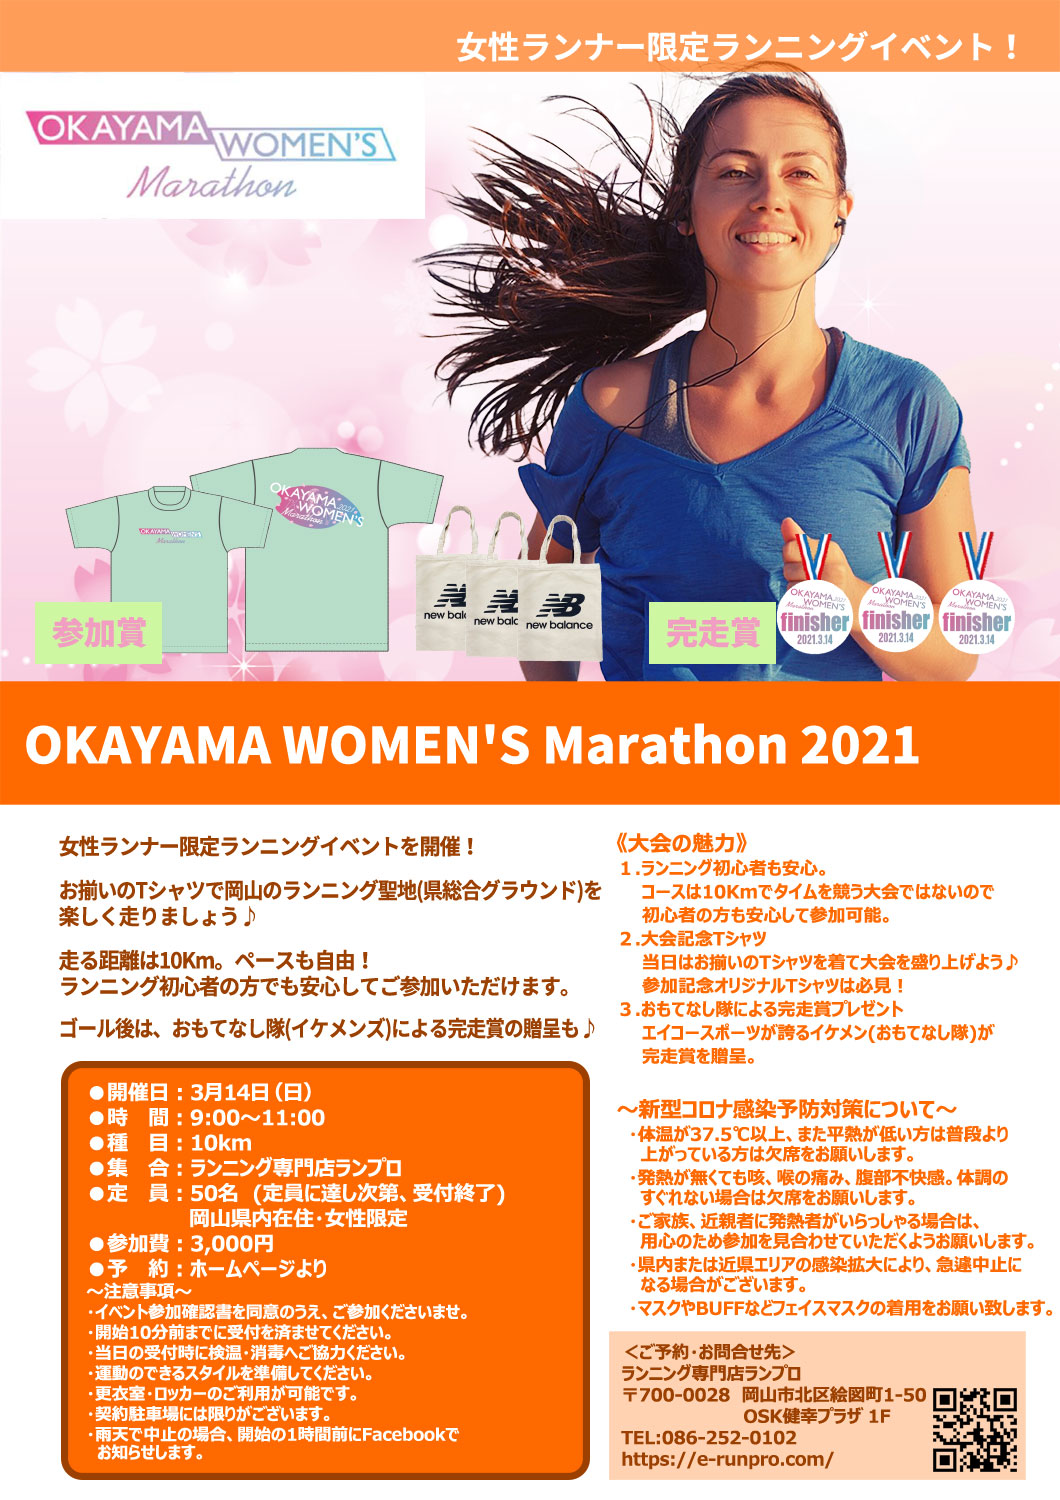 OKAYAMA WOMEN'S Marathon 2021